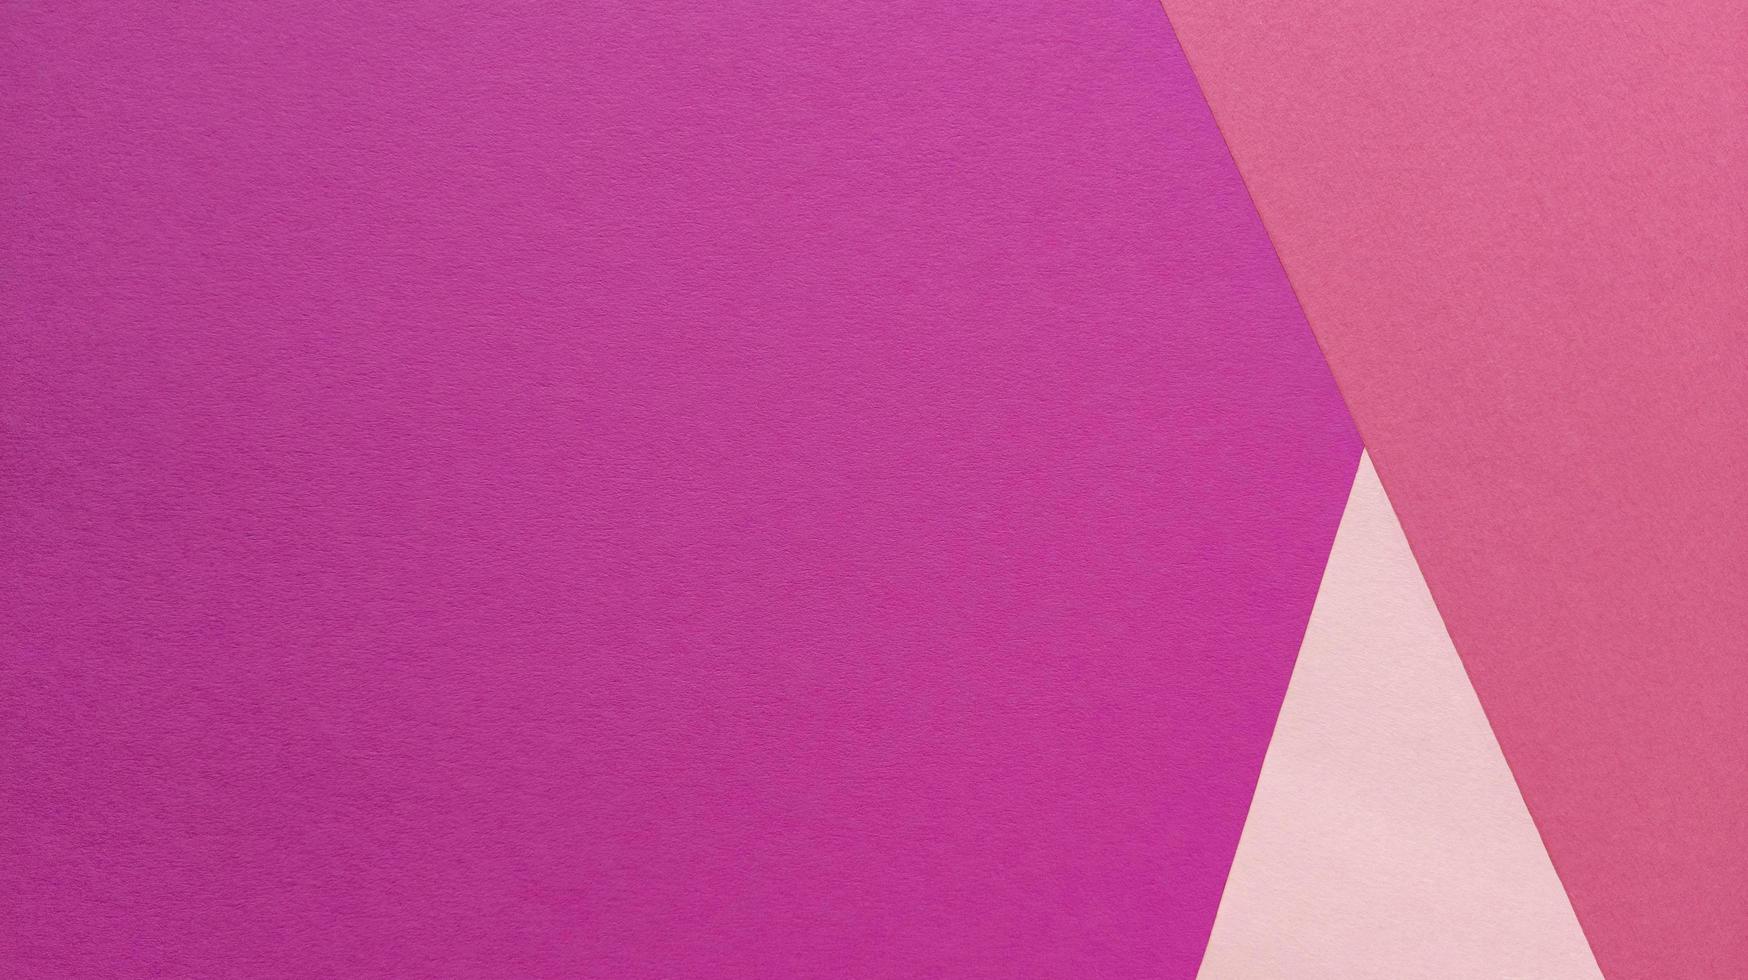 camada plana simples com textura pastel e formas triangulares. fundo de papel rosa. foto. foto